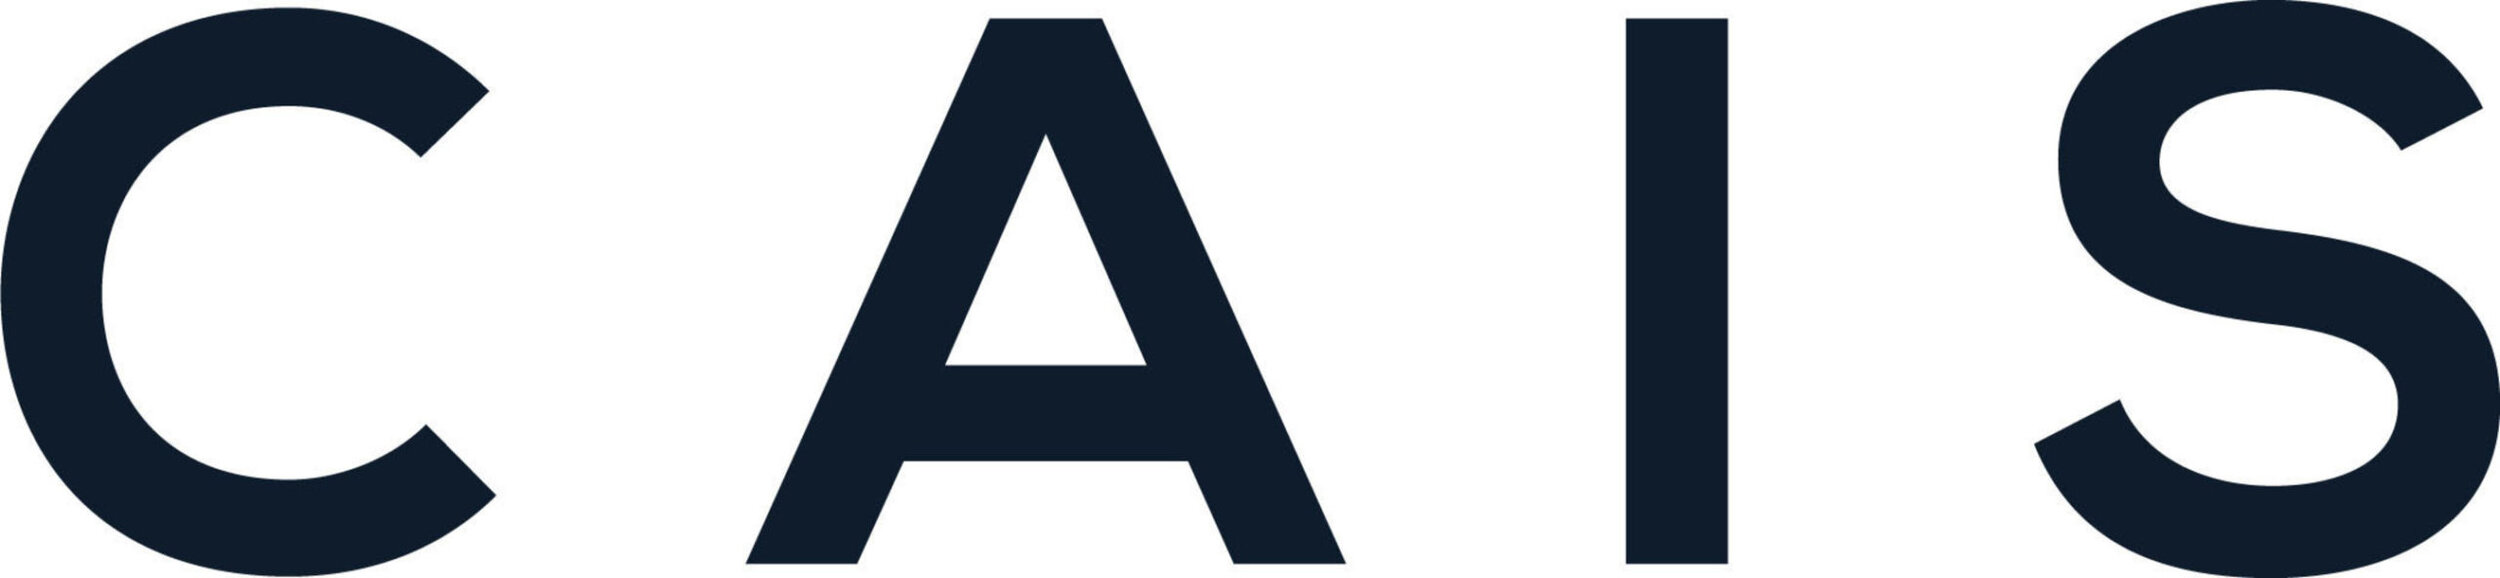 Logo - CAIS.jpg